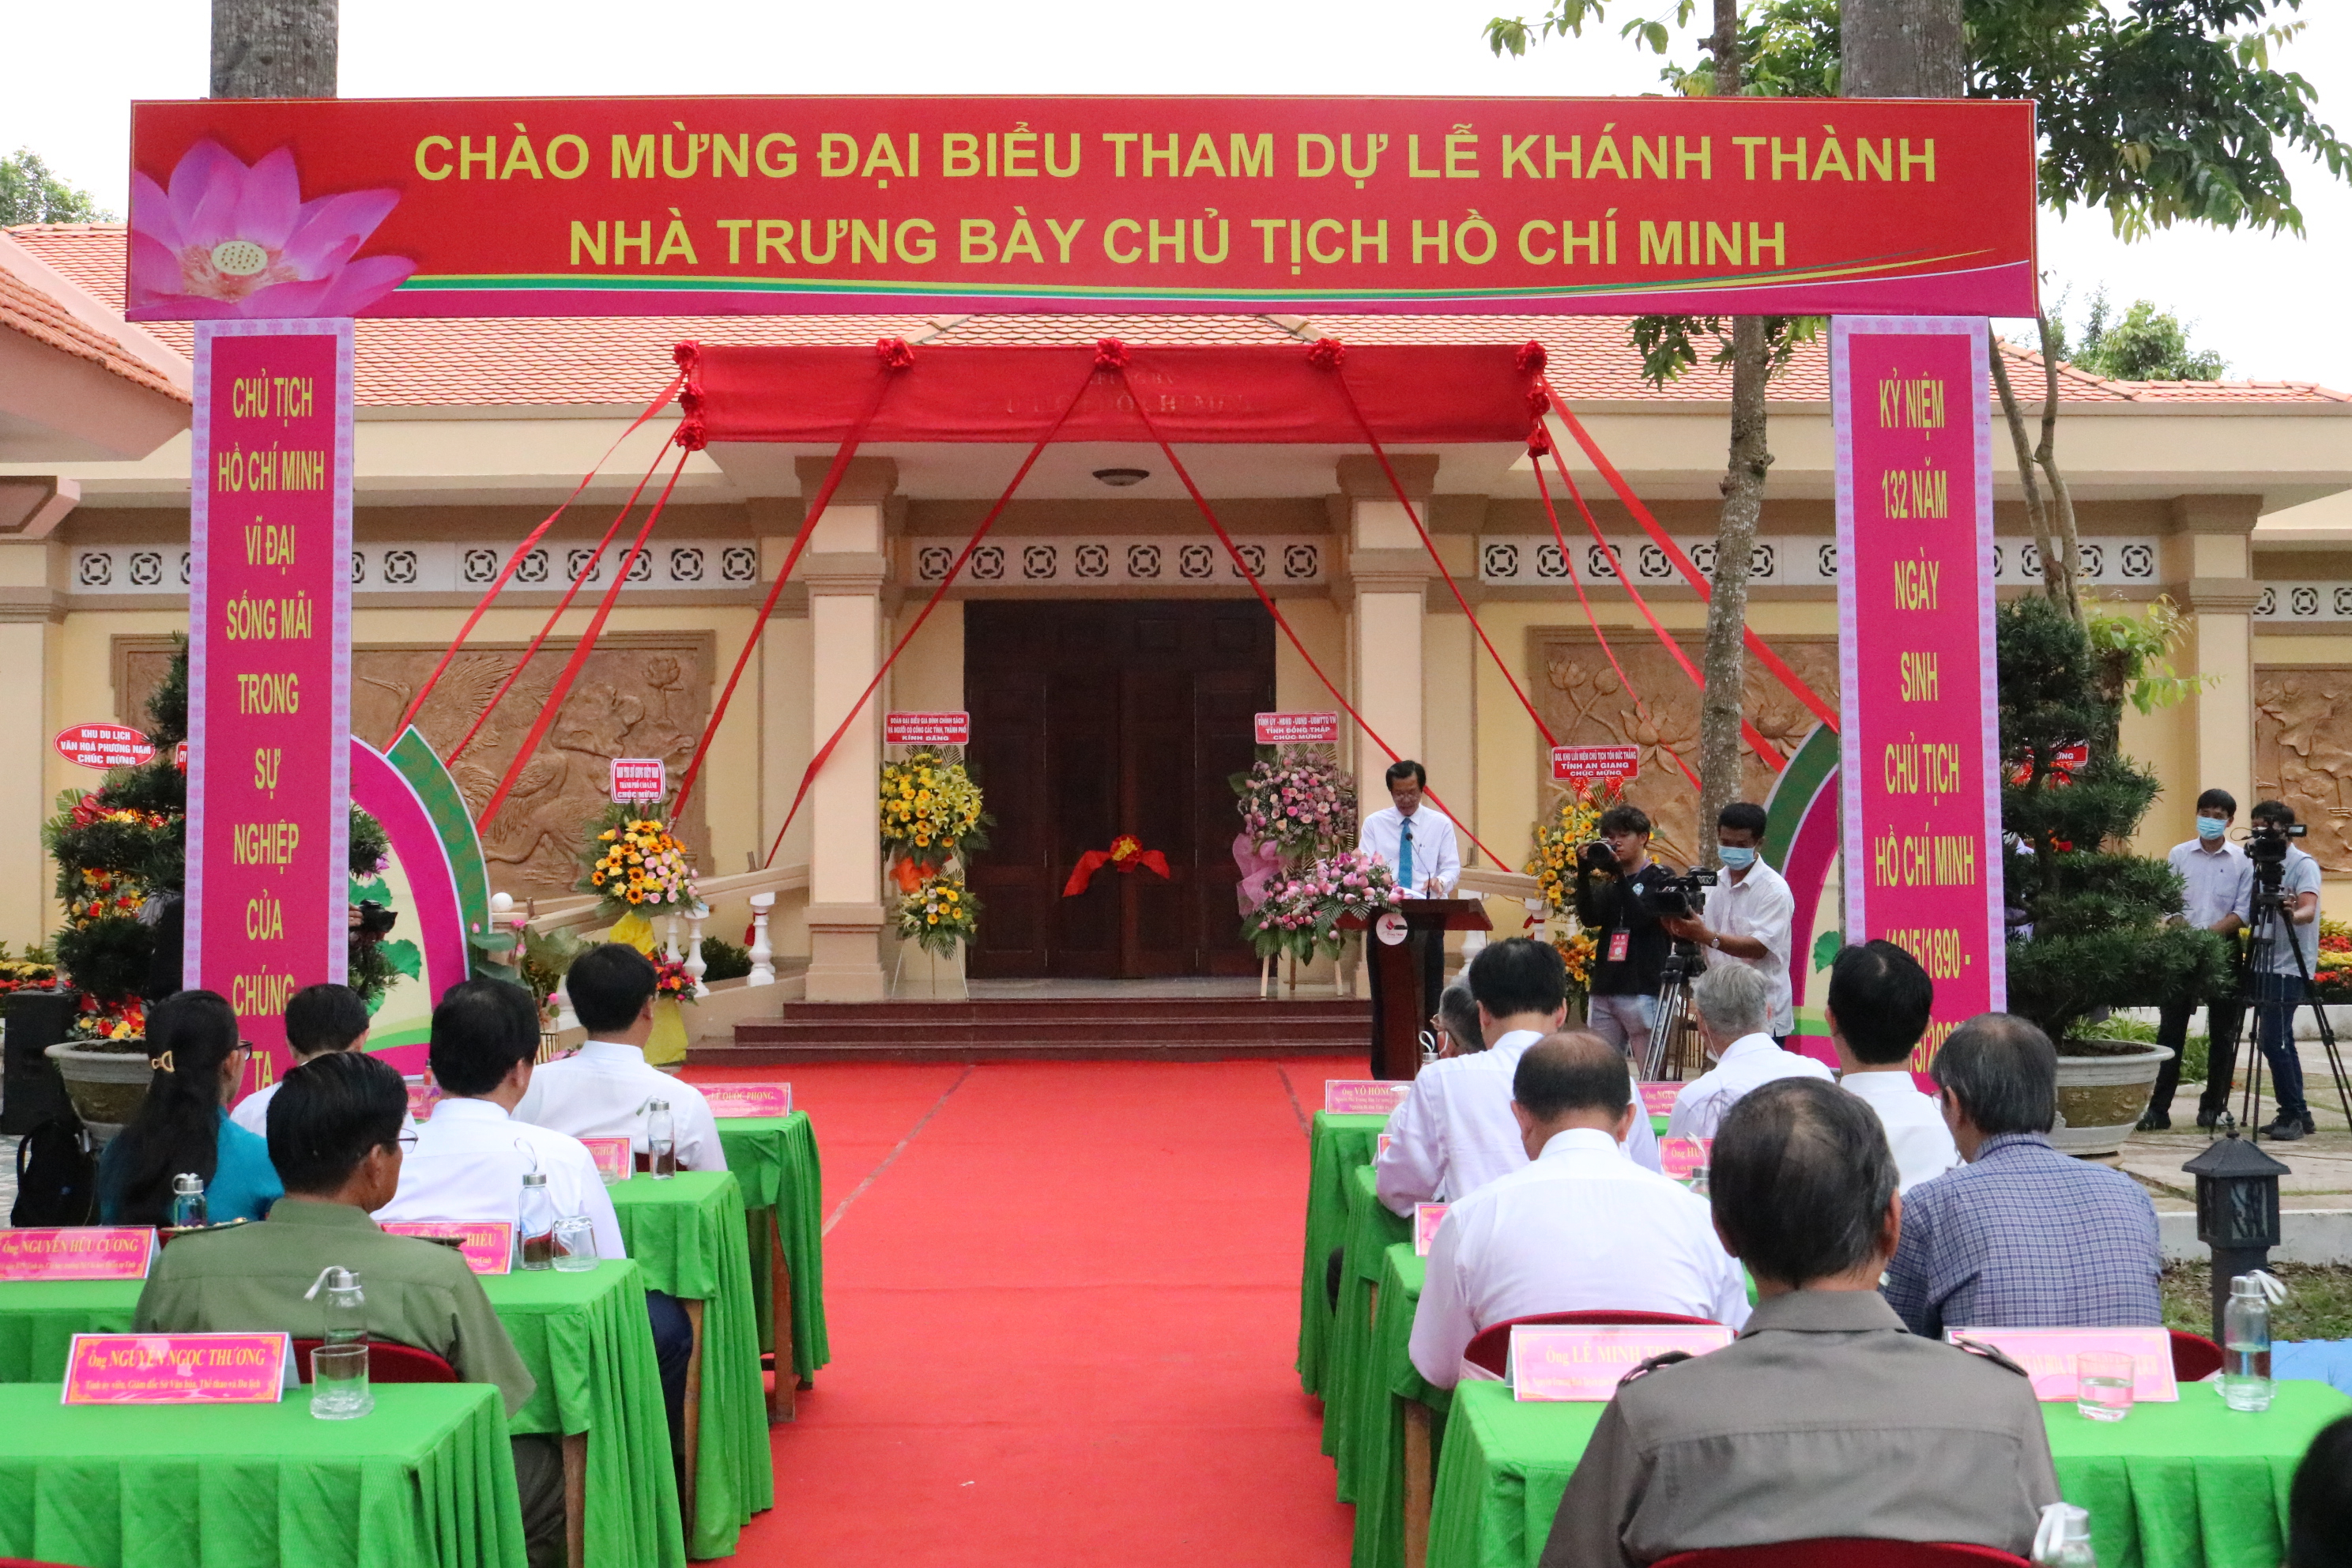 Quang cảnh buổi lễ khánh thành nhà trưng bài Chủ tịch Hồ Chí Minh.